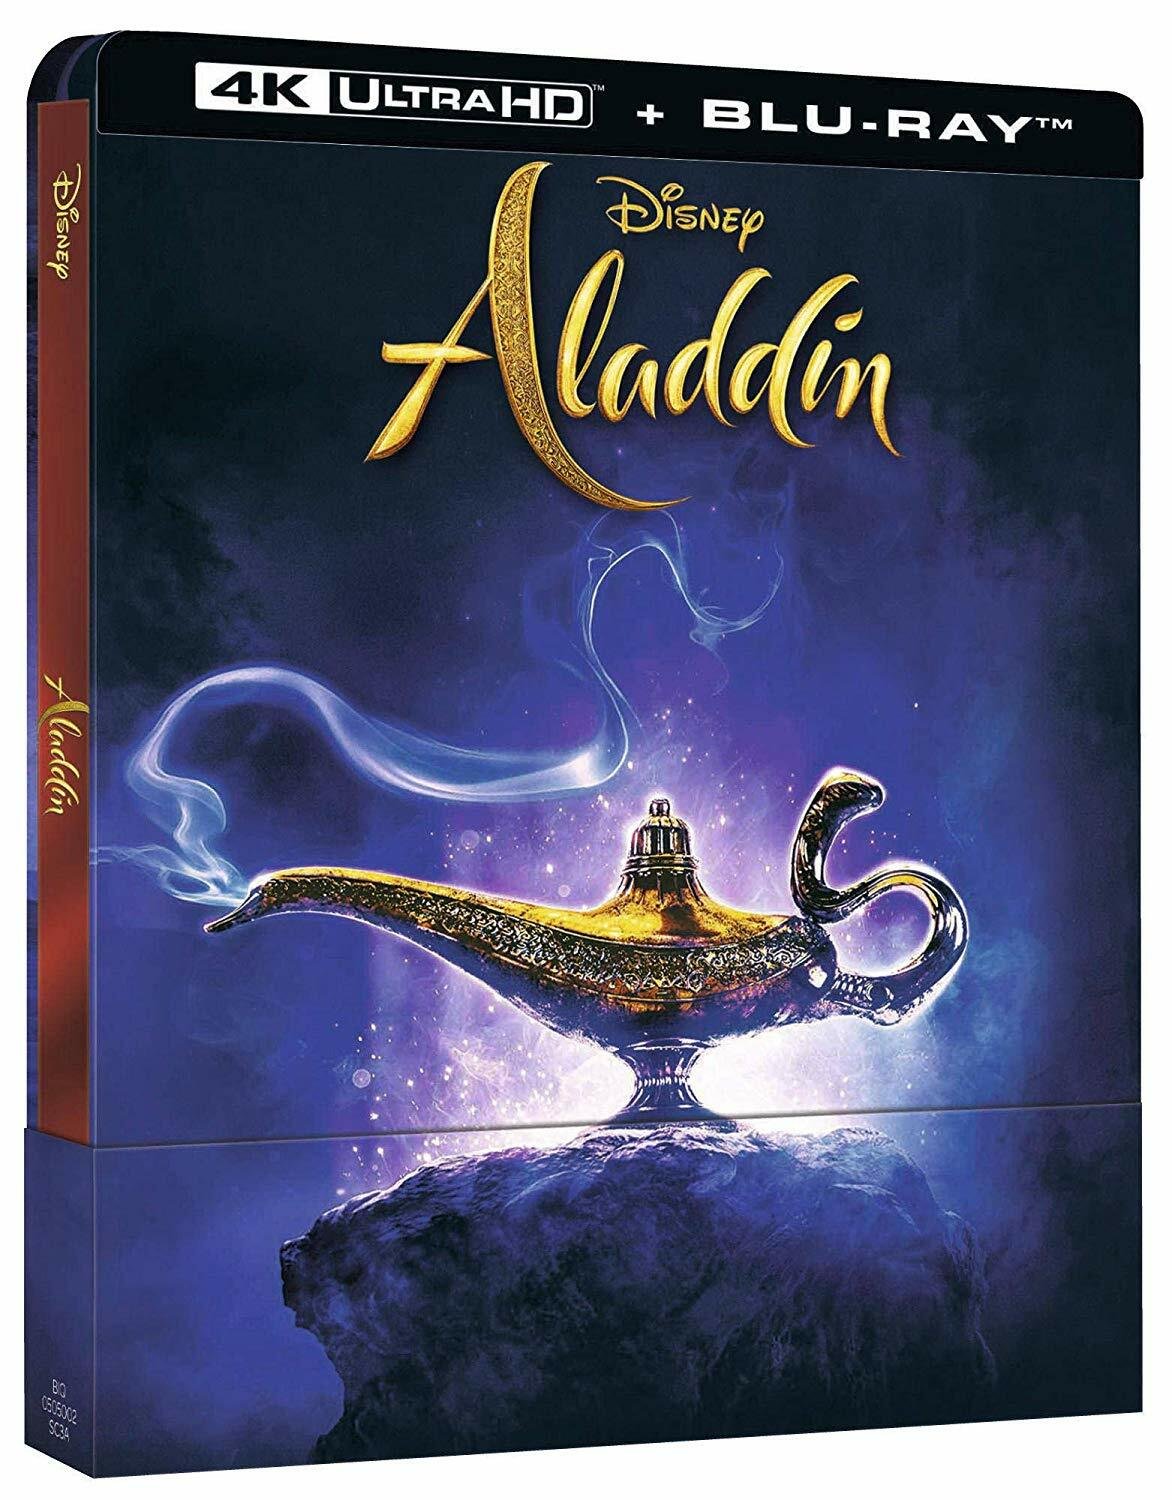 La cover della versione Home Video di Aladdin